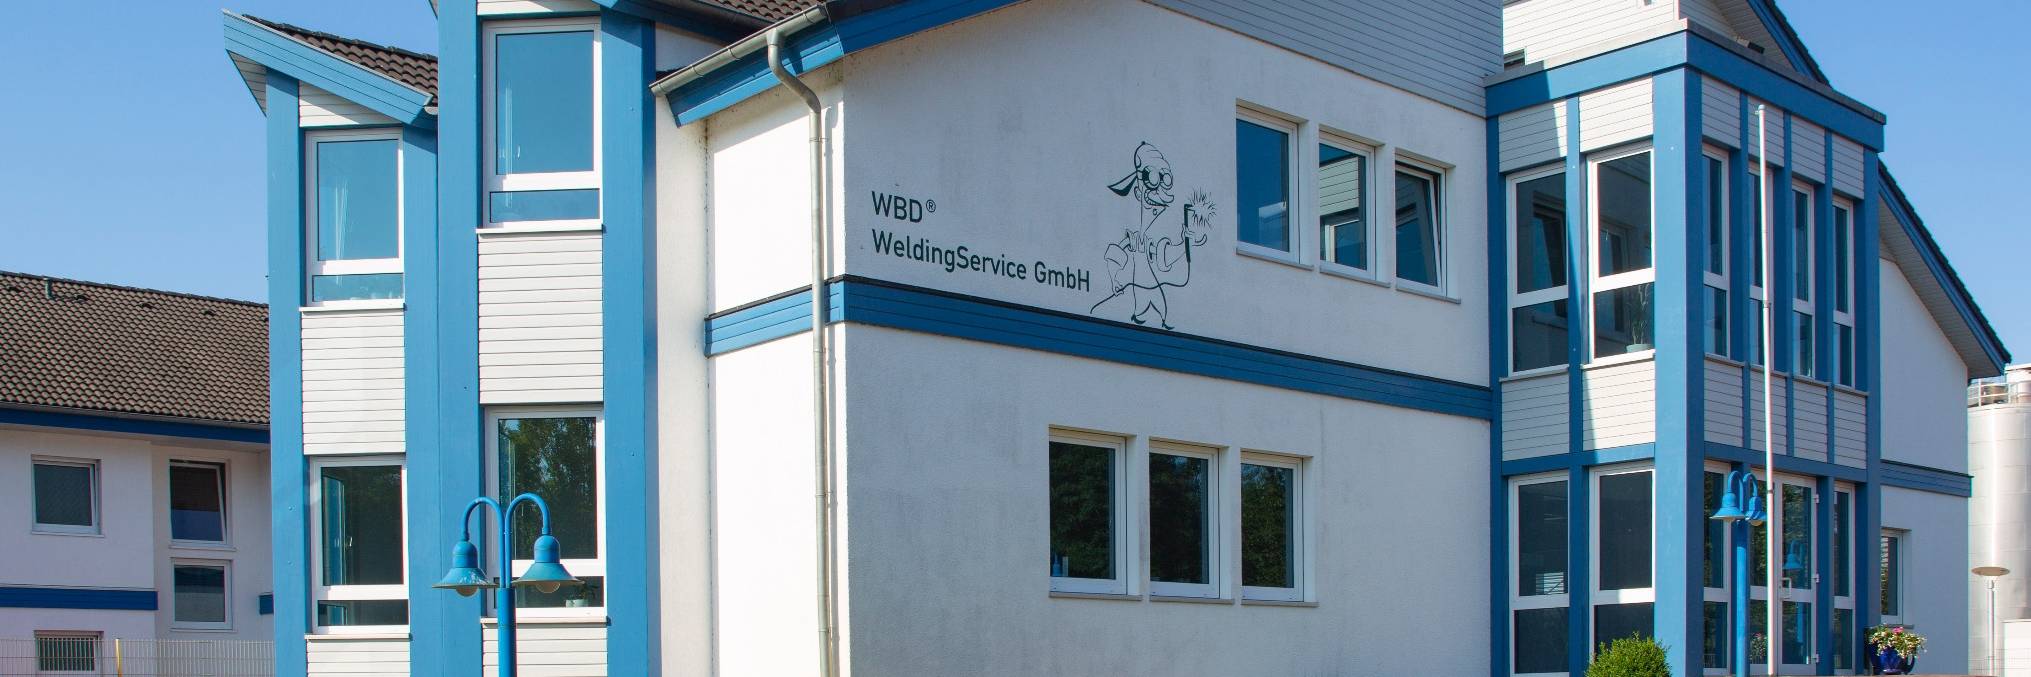 Die WBD WeldingService GmbH